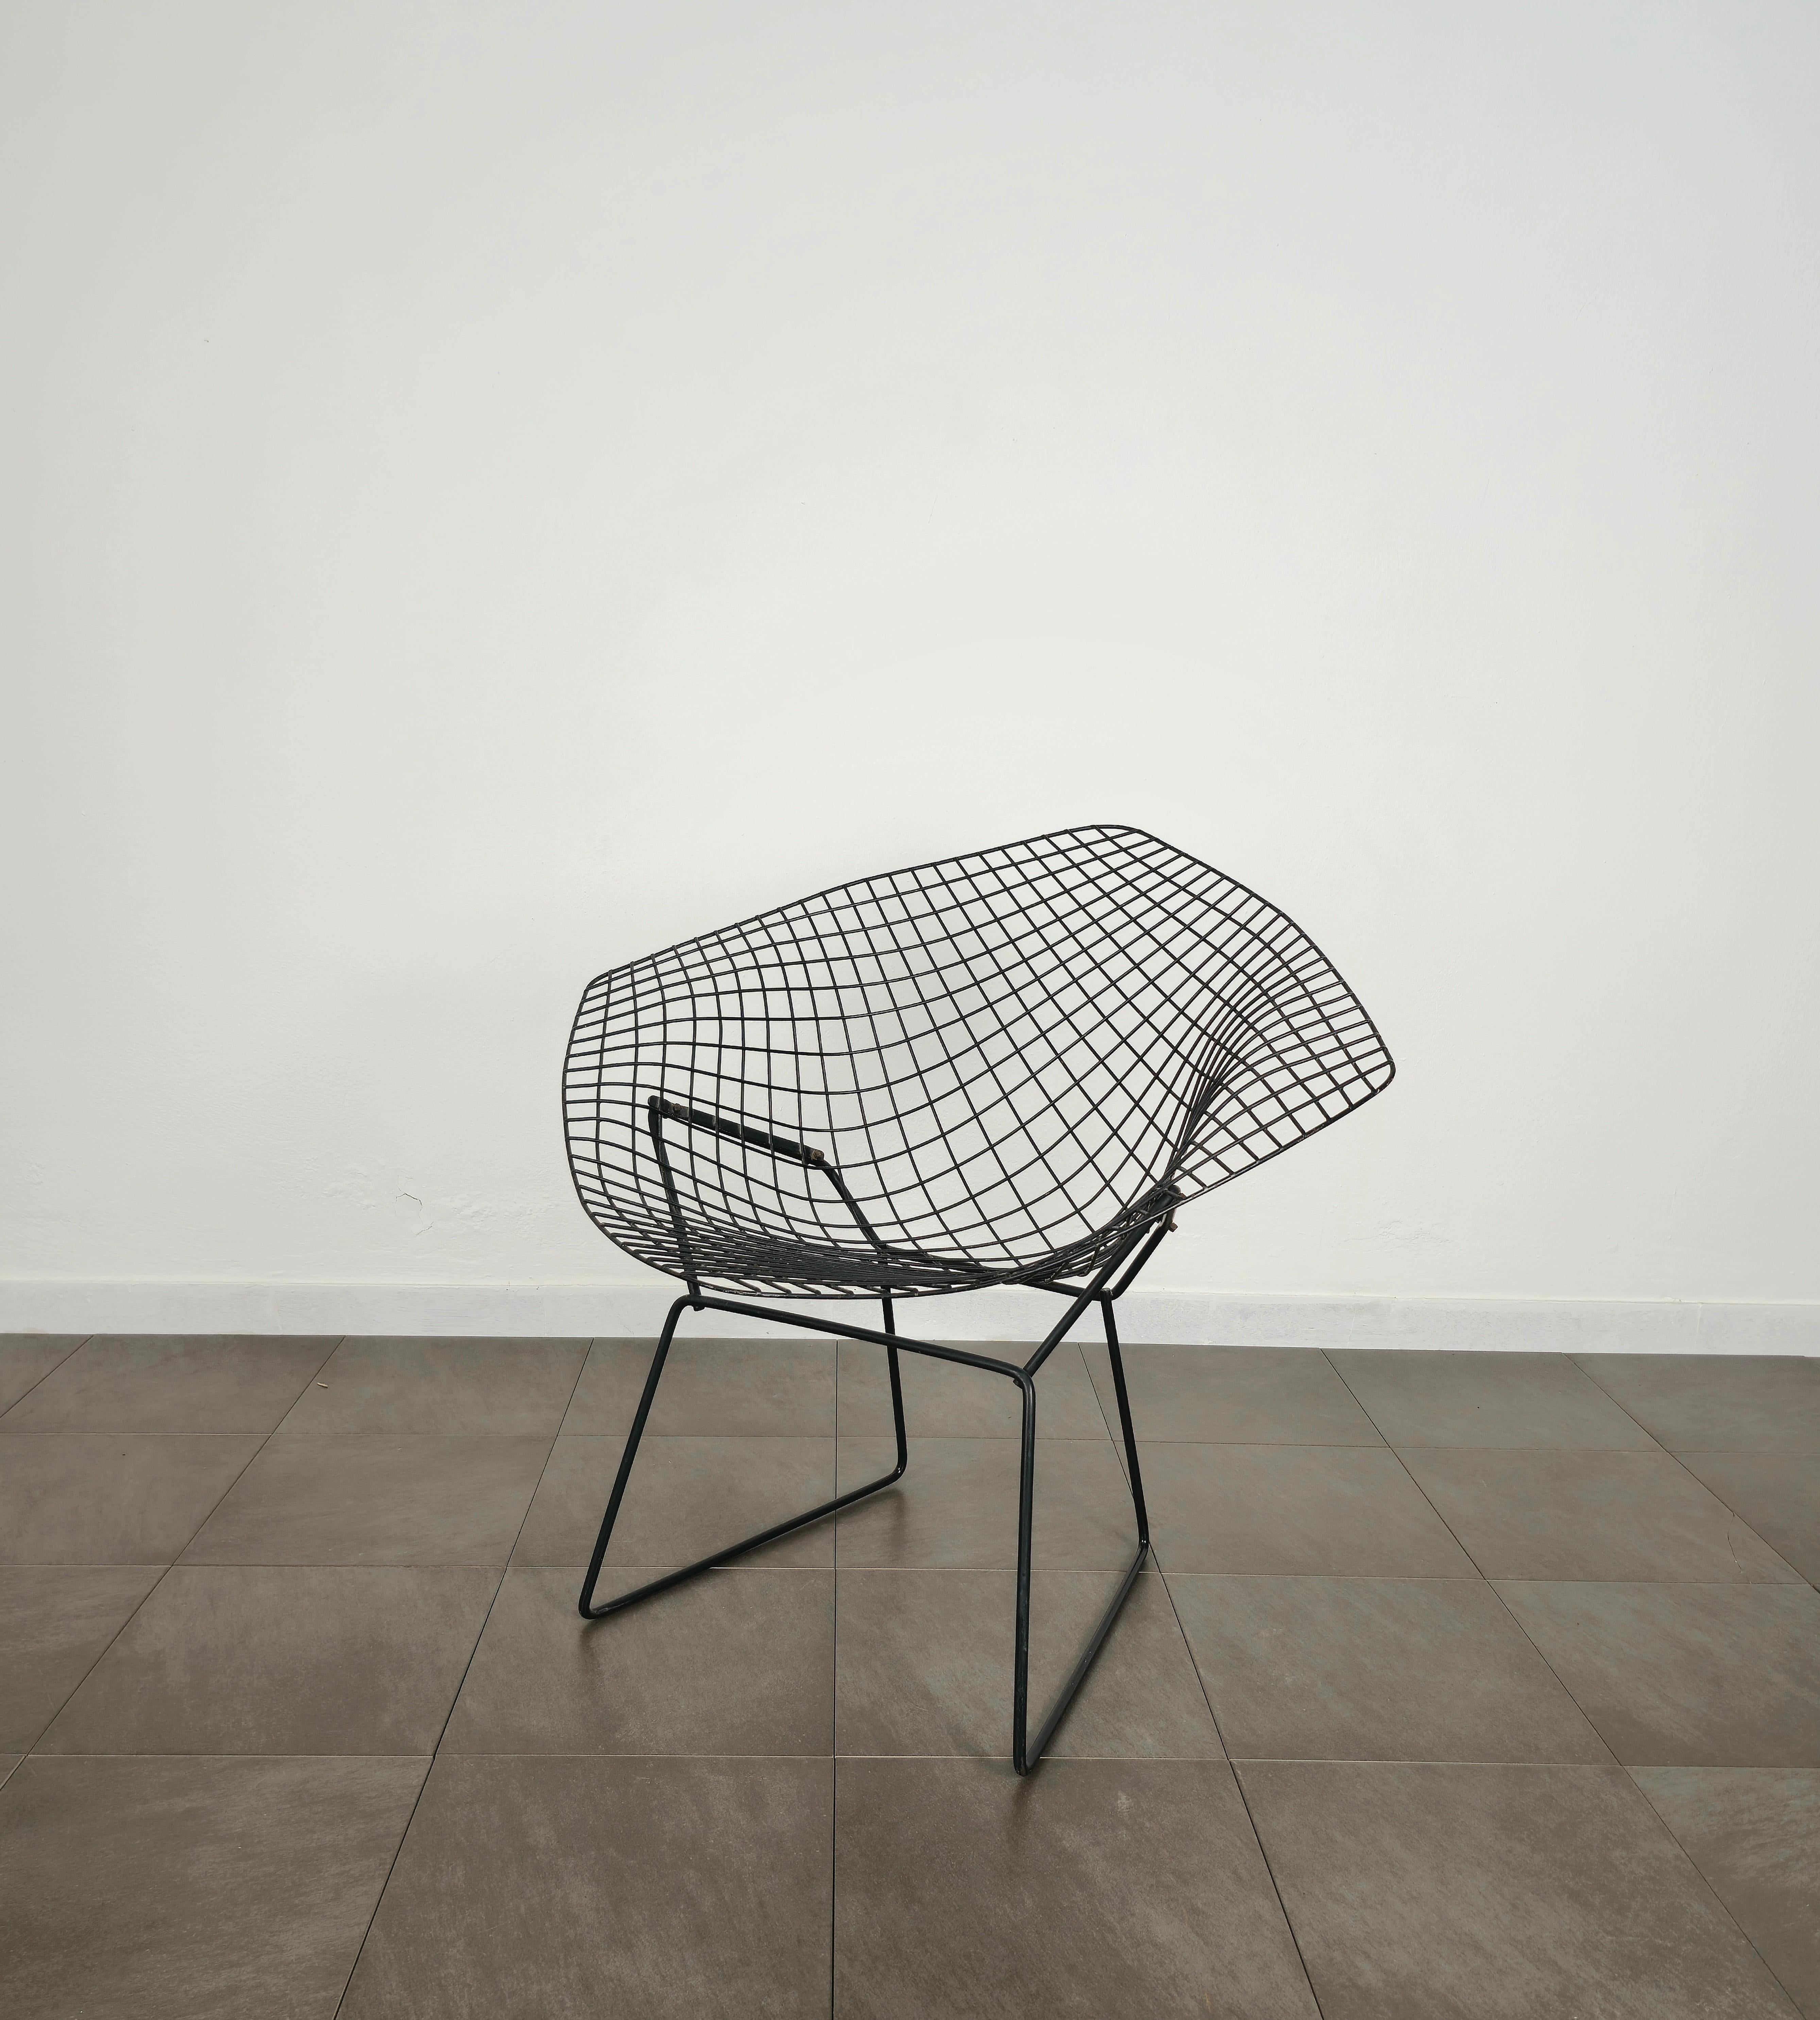 Chaise ou fauteuil conçu par le designer Harry Bertoia et produit aux États-Unis dans les années 70 par Knoll international.
Ce fauteuil sculptural est fabriqué en métal émaillé noir et doit son nom de 